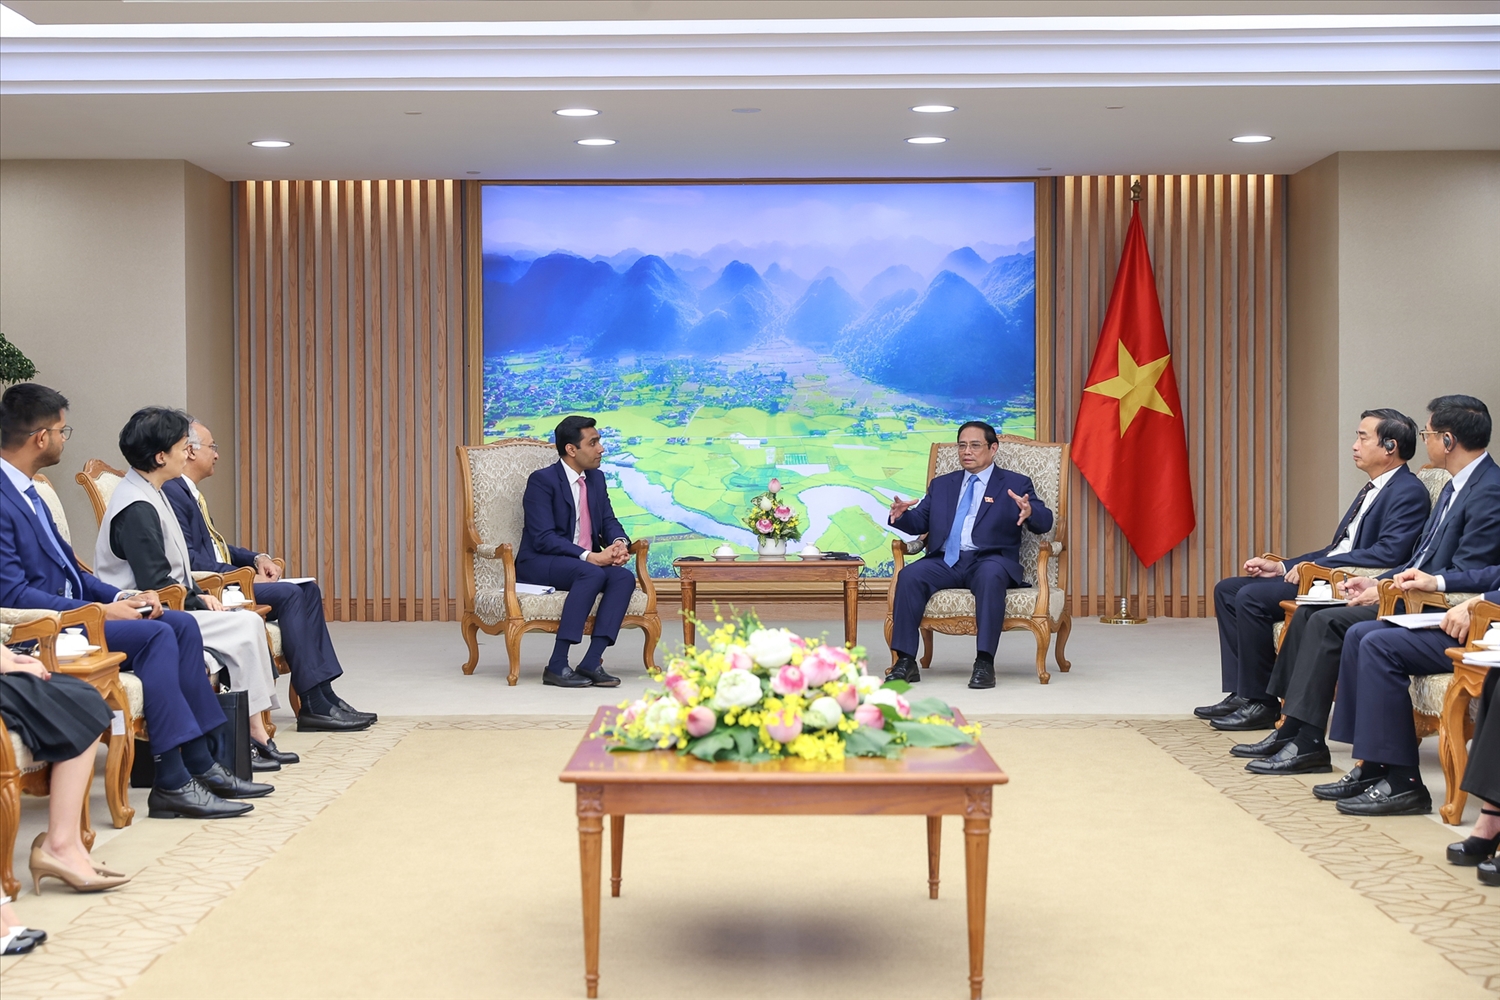 Thủ tướng hy vọng Tập đoàn Adani sẽ phối hợp hiệu quả với các đối tác Việt Nam để có những kết quả cụ thể trong hoạt động đầu tư tại Việt Nam - Ảnh: VGP/Nhật Bắc